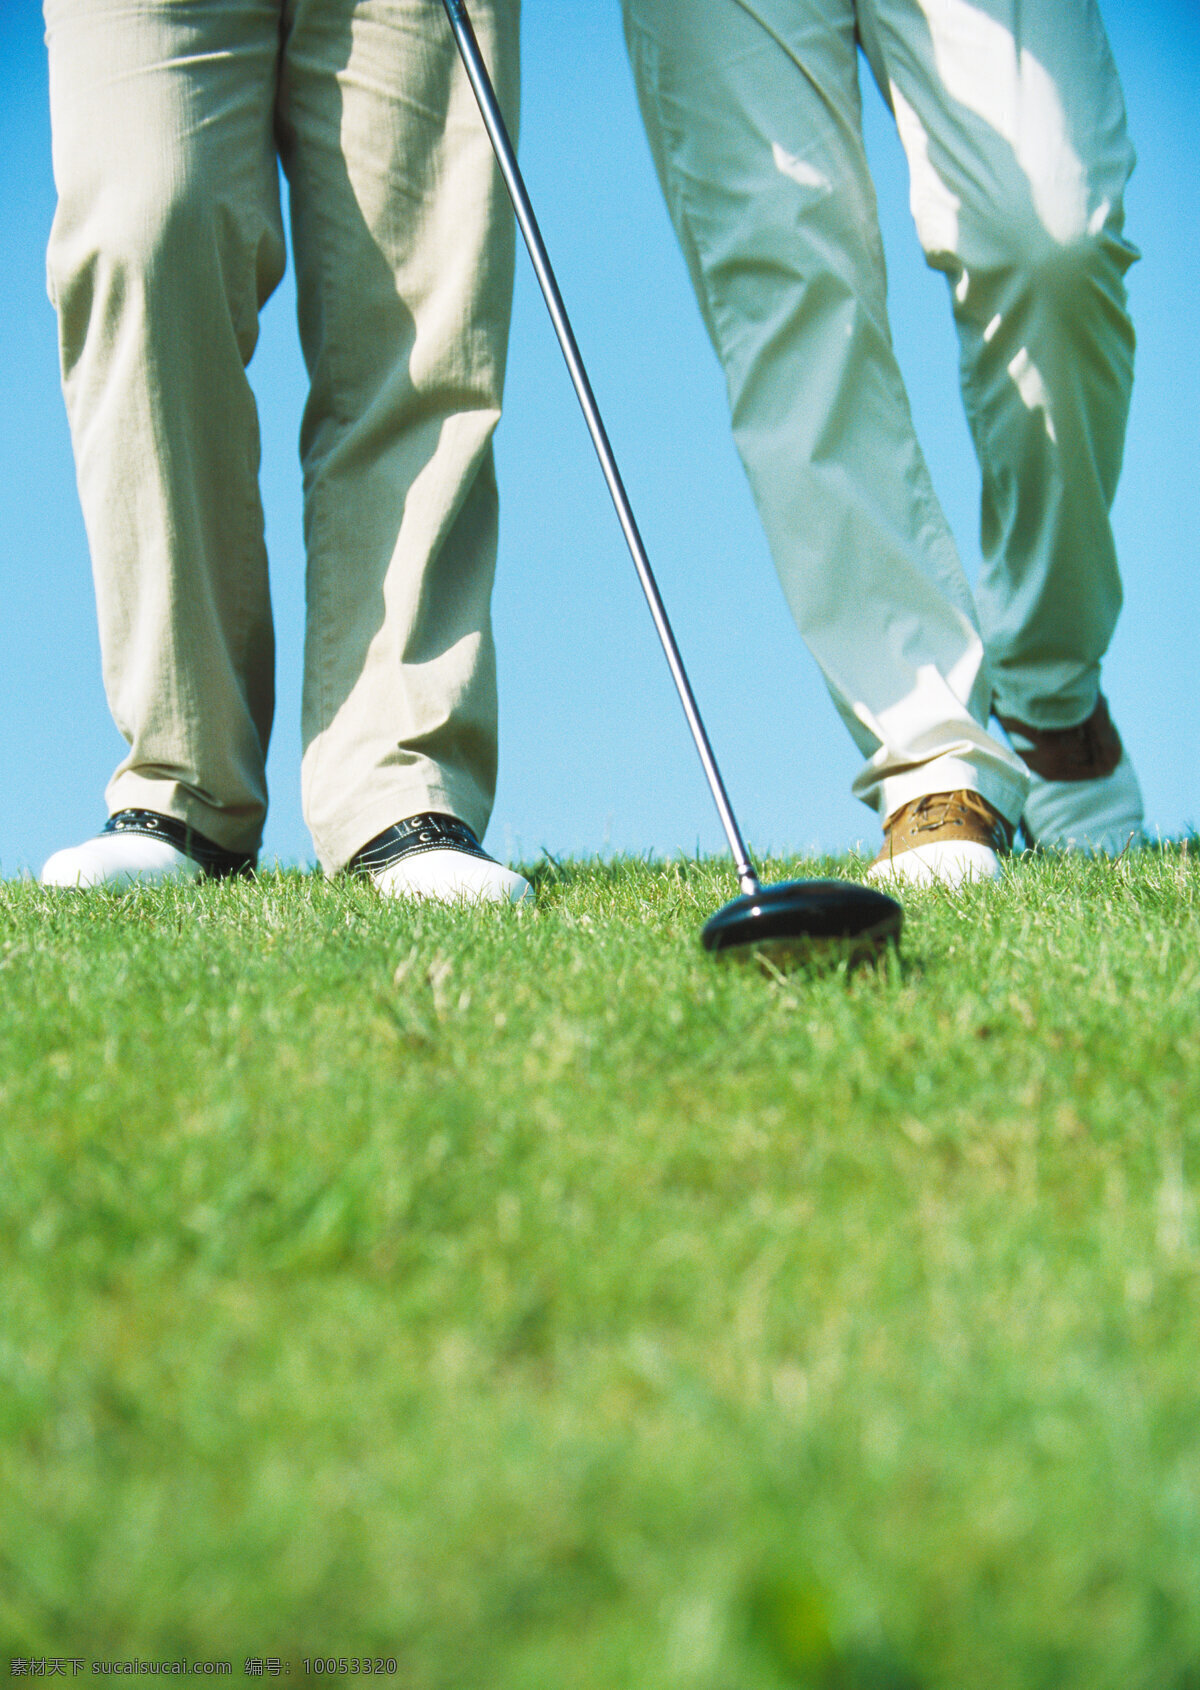 两个 人 腿部 高尔夫 球棒 天空 高尔夫球棒 人物 两个人 绿草地 草地 草坪 高尔夫球 高尔夫球场 休闲 娱乐 运动 高清图片 体育运动 生活百科